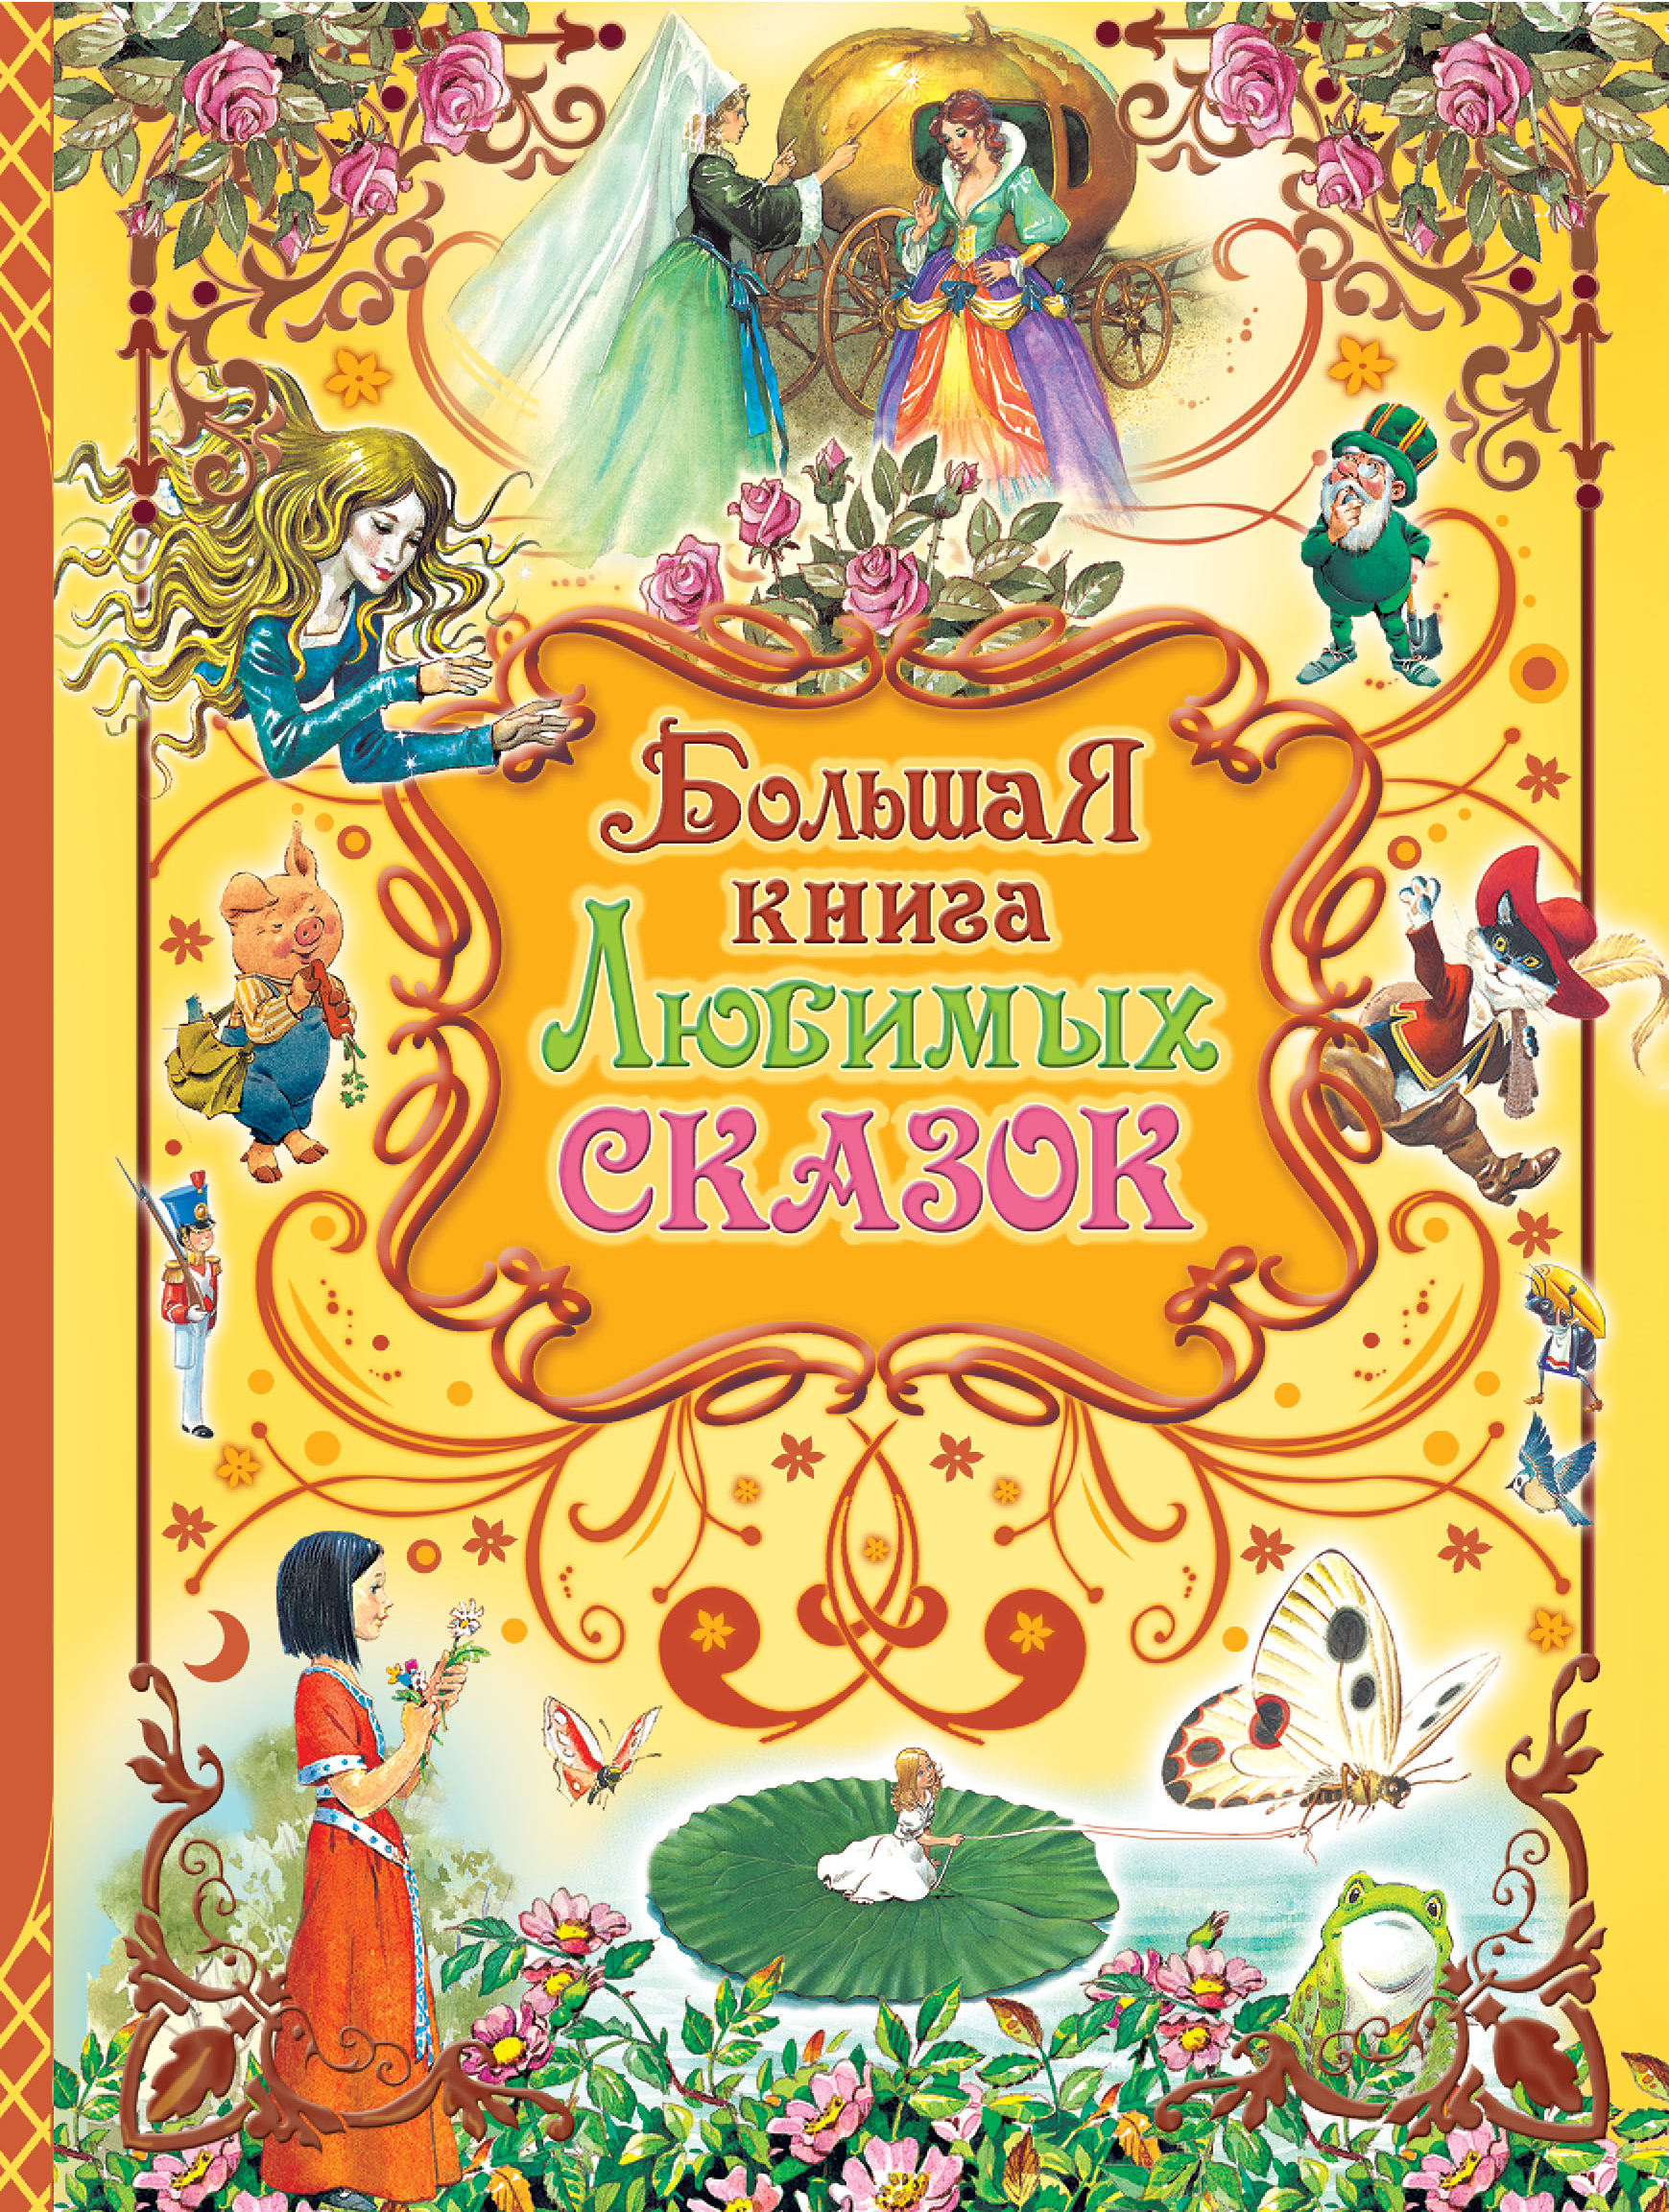 Большая книга любимых сказок золотая книга любимых русских сказок